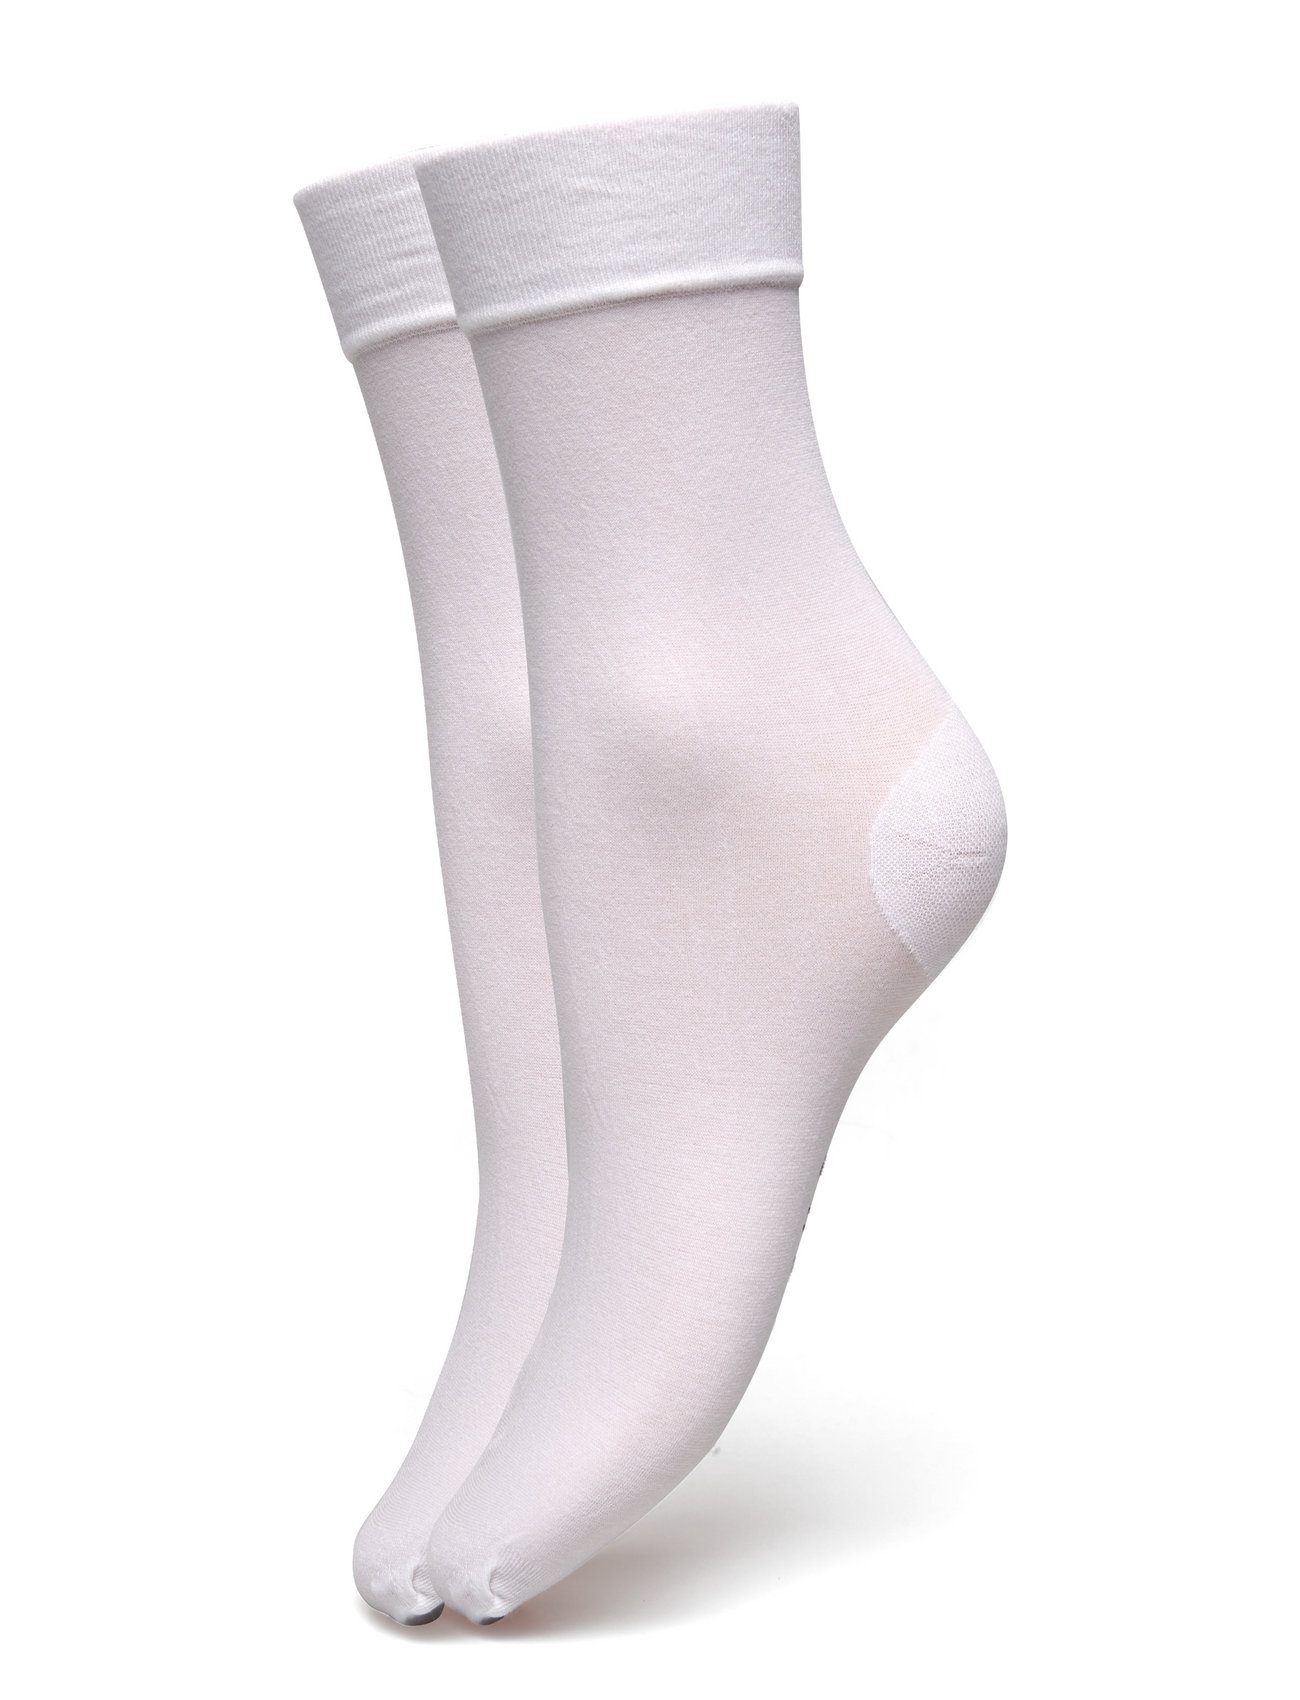 2-Pack The Cotton Socks Designers Socks Regular Socks White Swedish Stockings